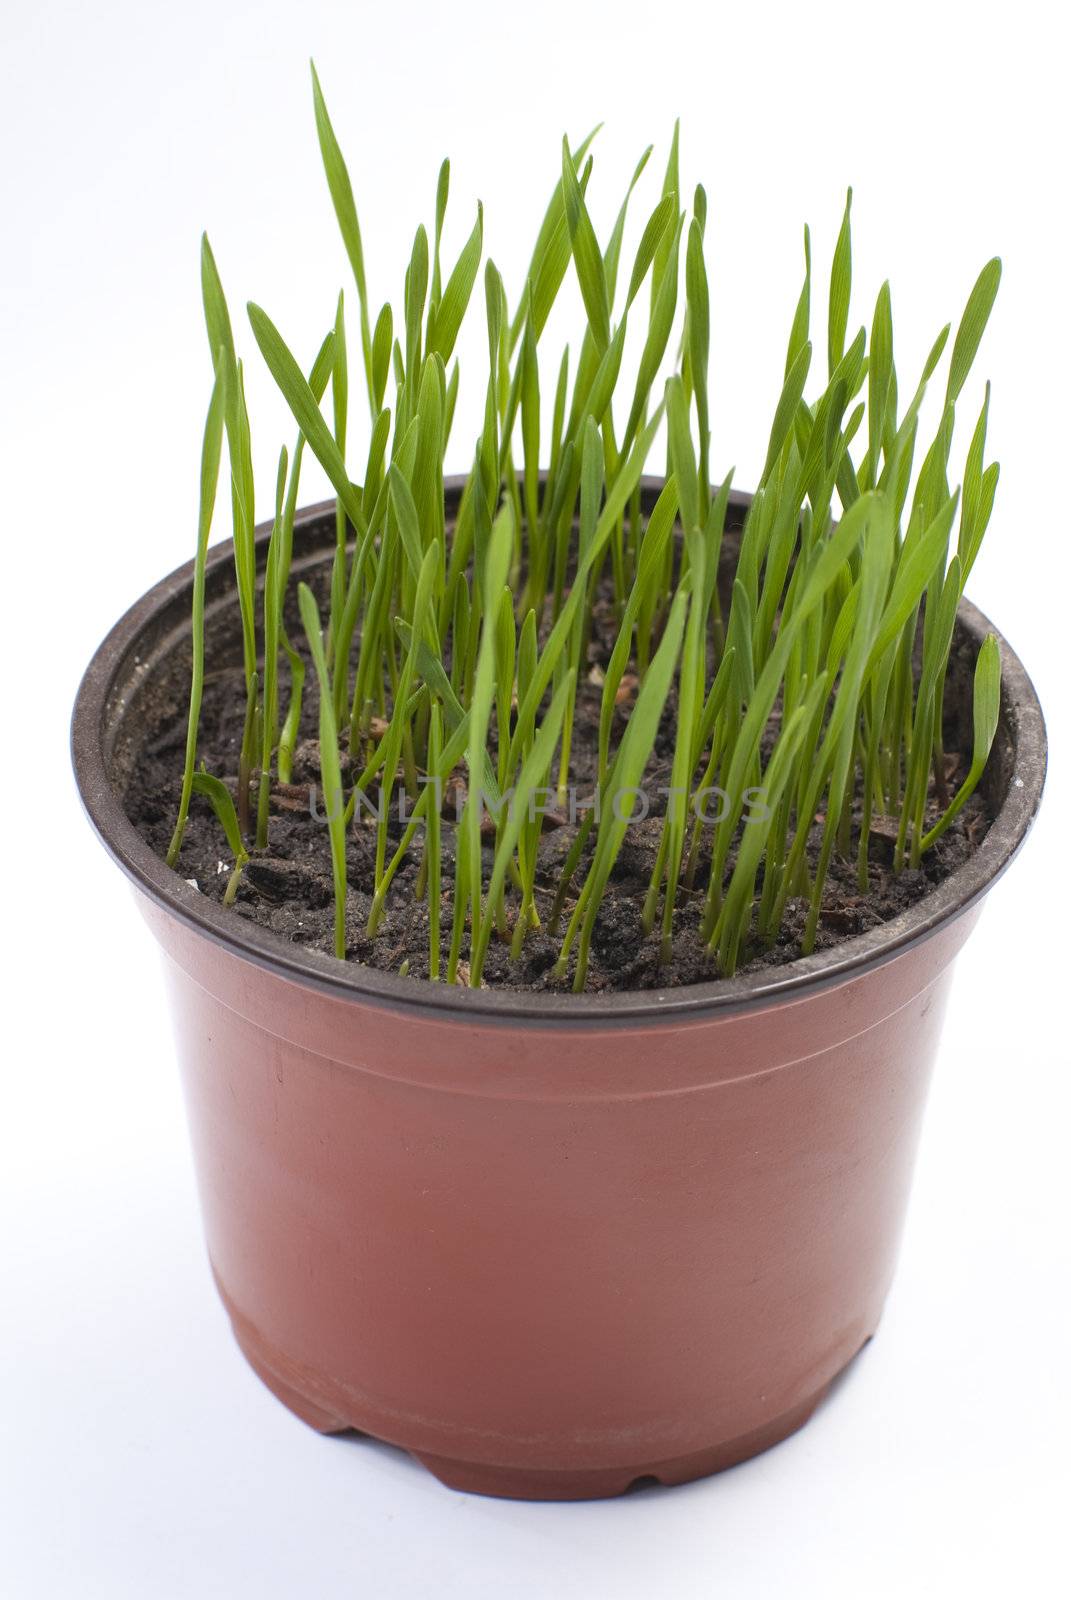 a green grass grows in a pot